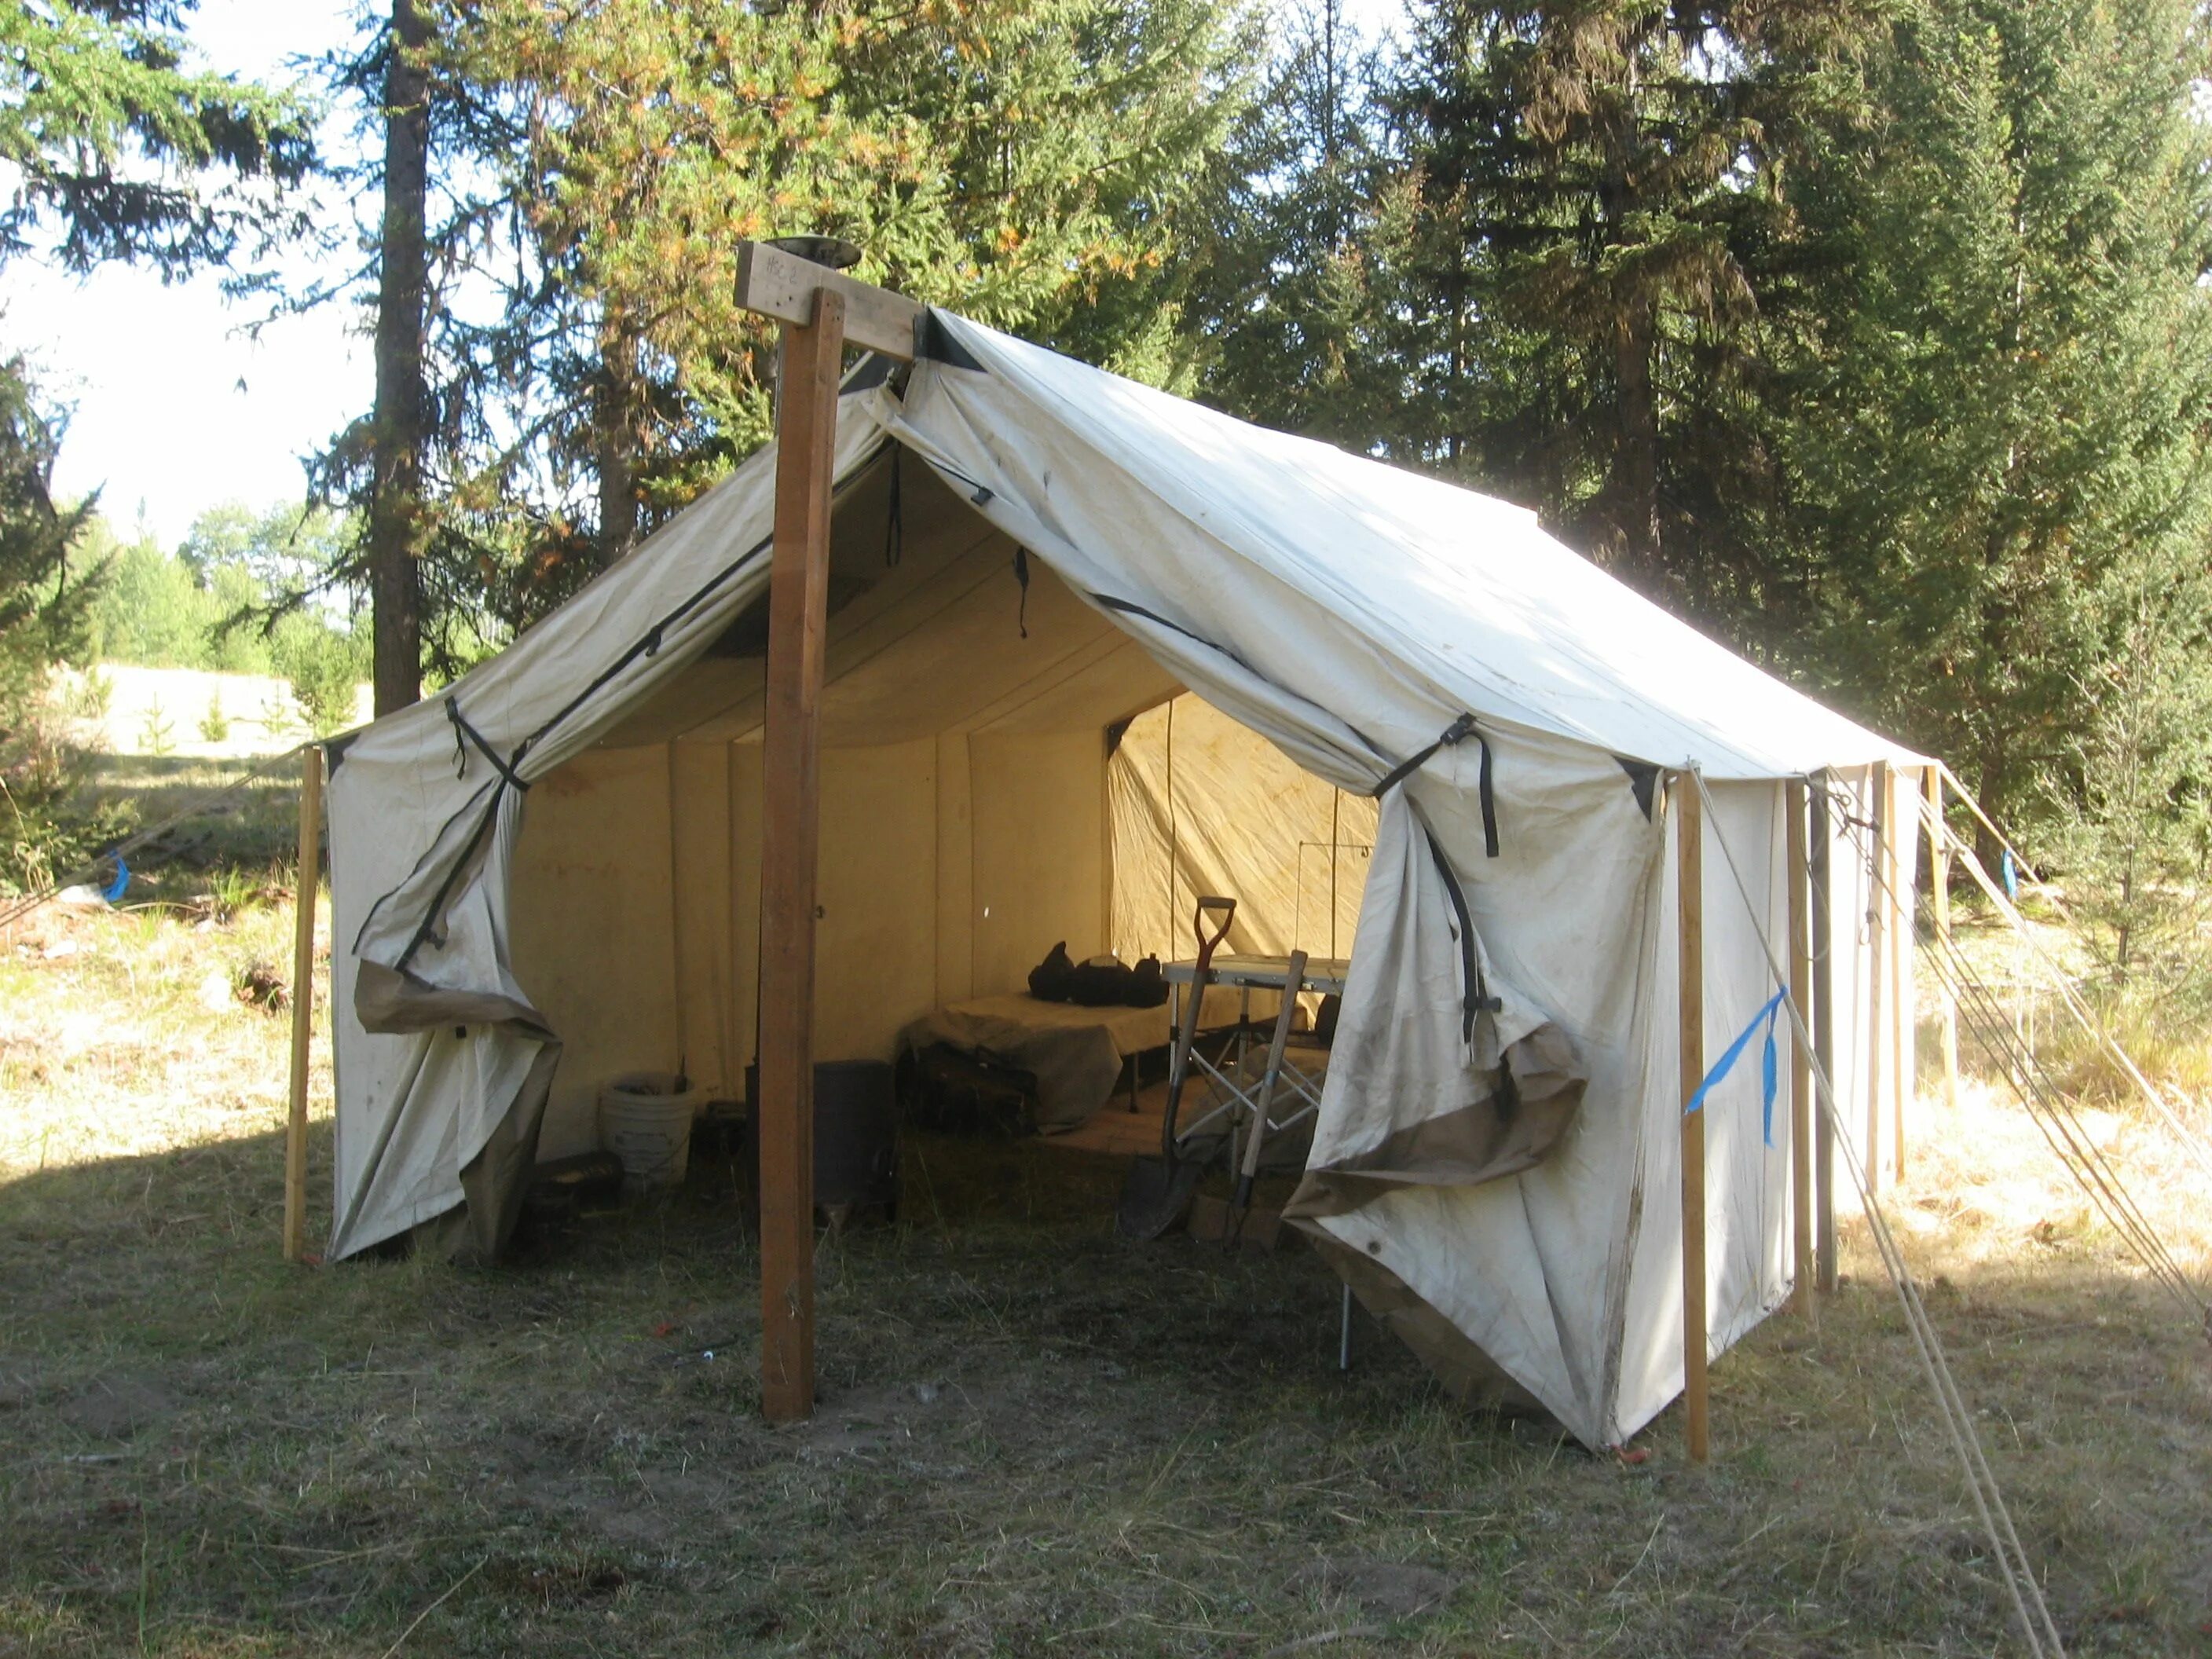 Шатер Camping World. Палатка Camping Tents 2905. Палатка шатер Onree Ohio. Обустройство кемпинга в палатках. Camping platform